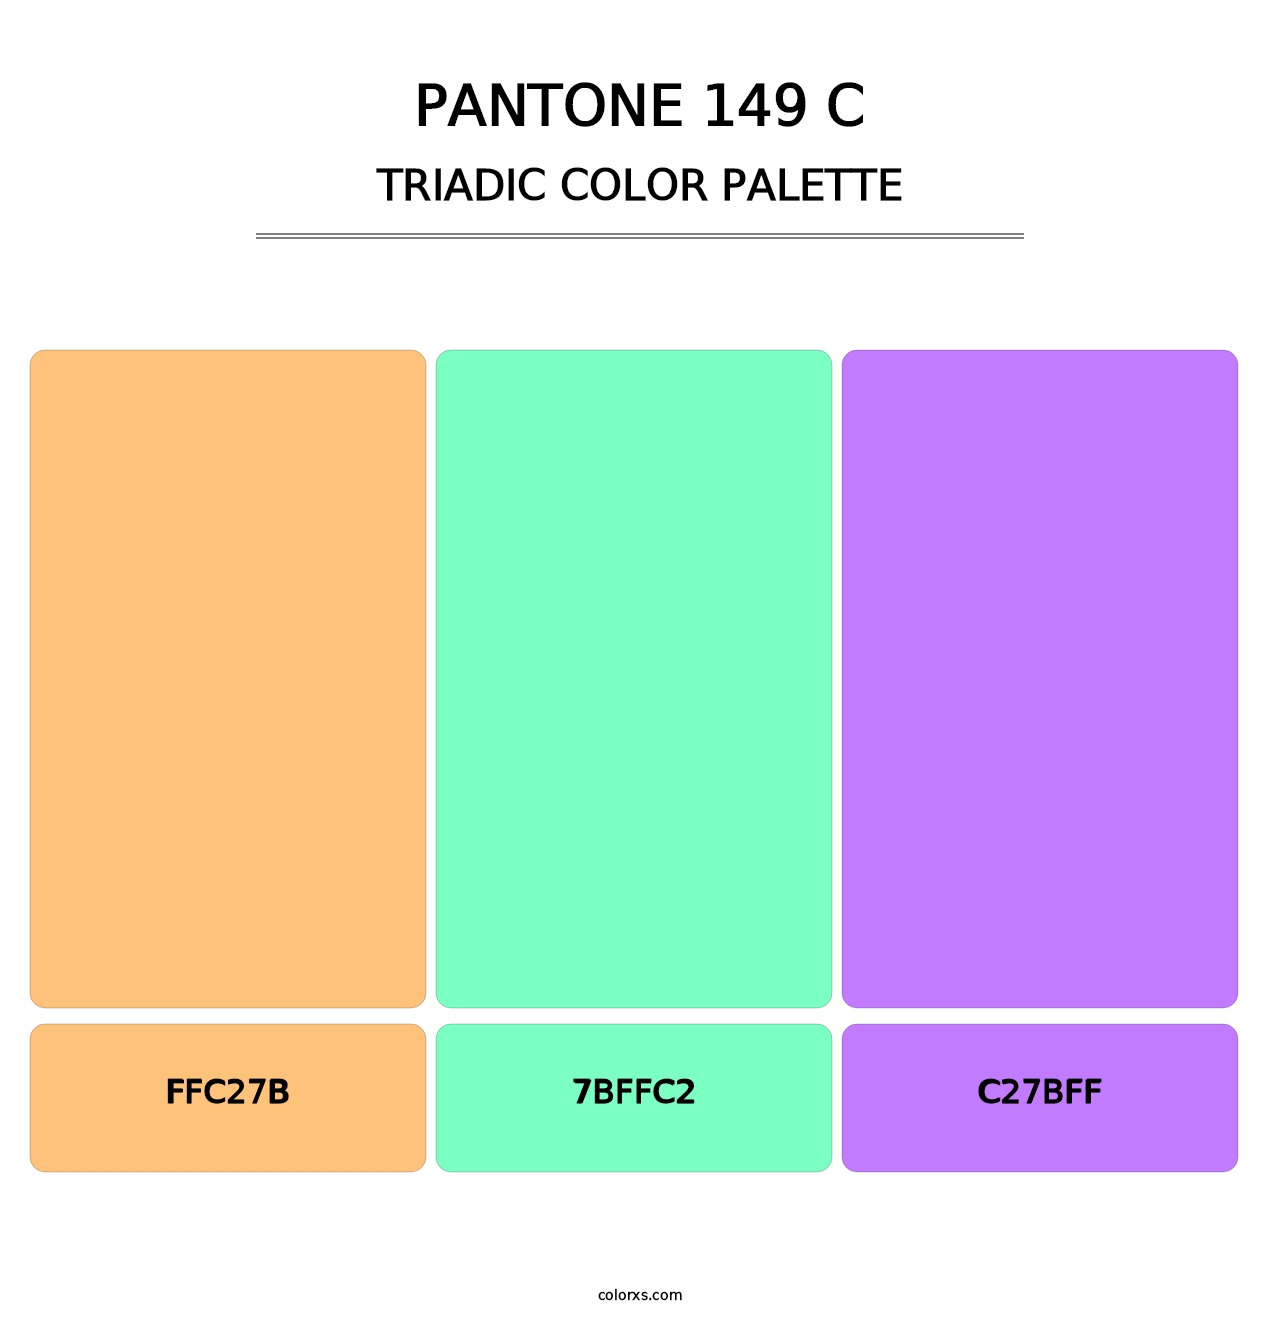 PANTONE 149 C - Triadic Color Palette